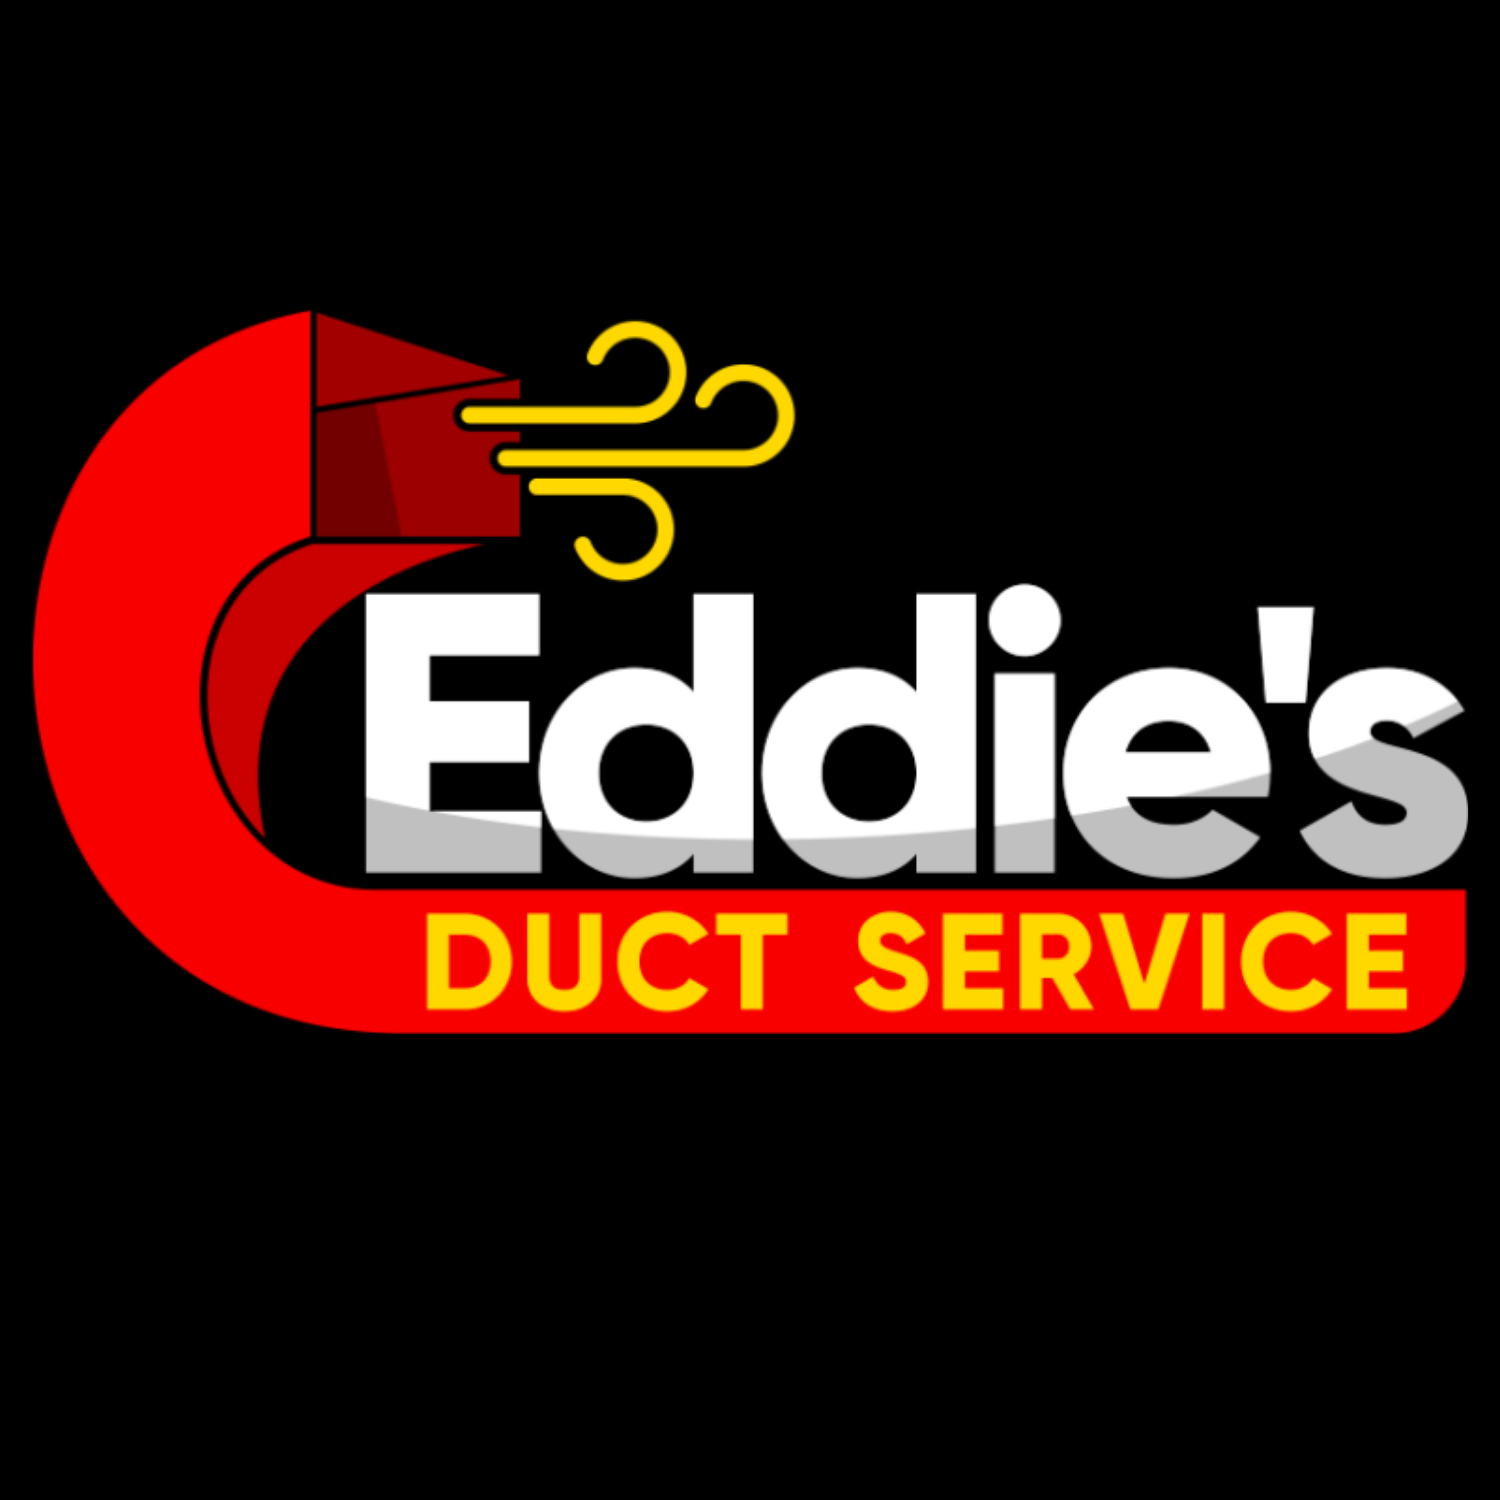 Eddie's Duct Service